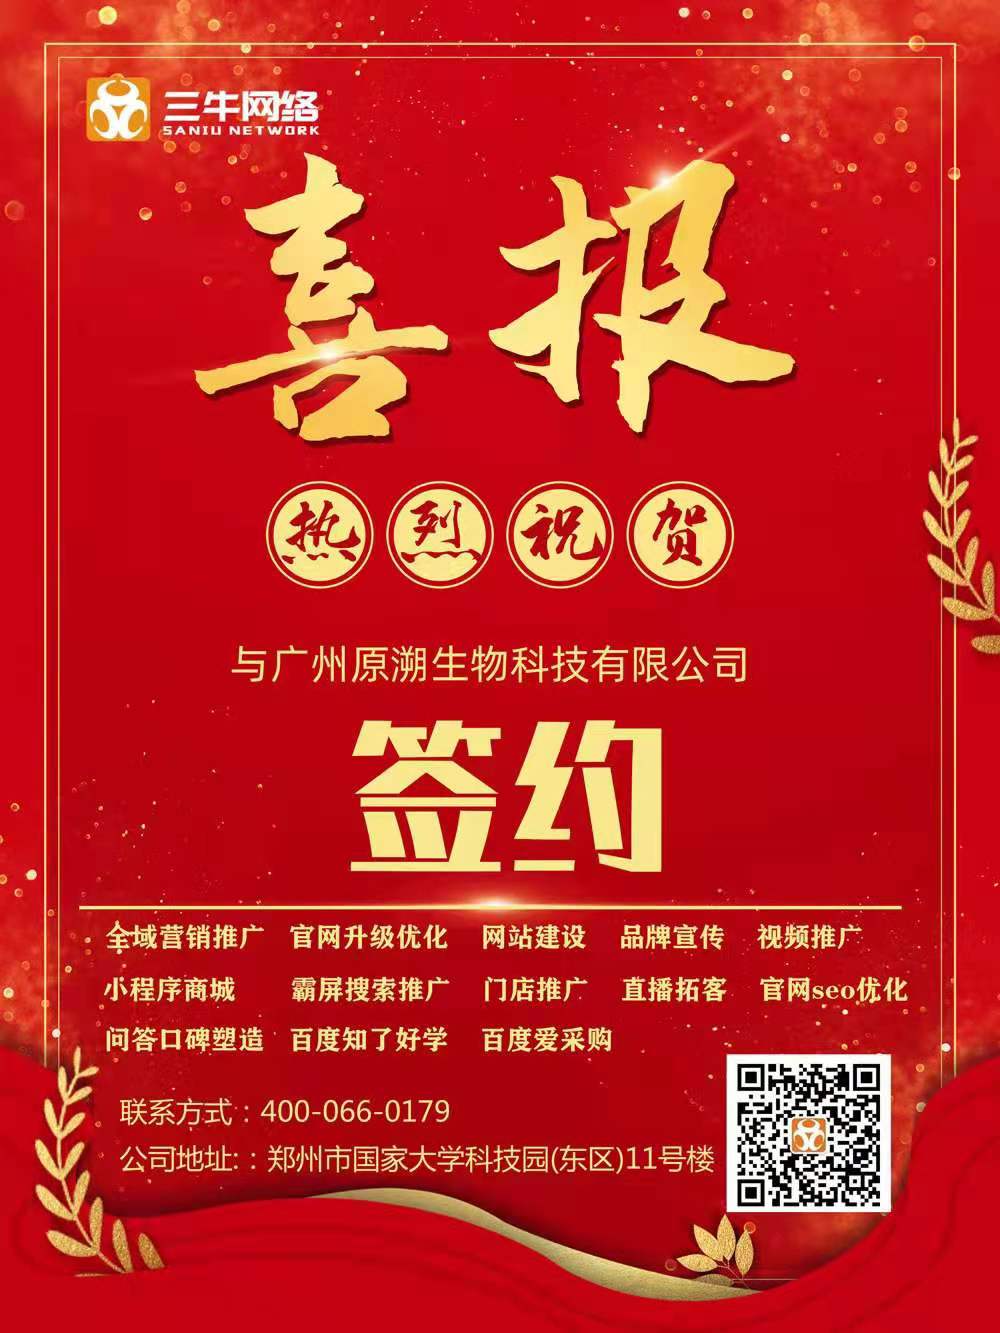 热烈祝贺『广州原溯生物』与『三牛网络』达成互联网项目开发合作